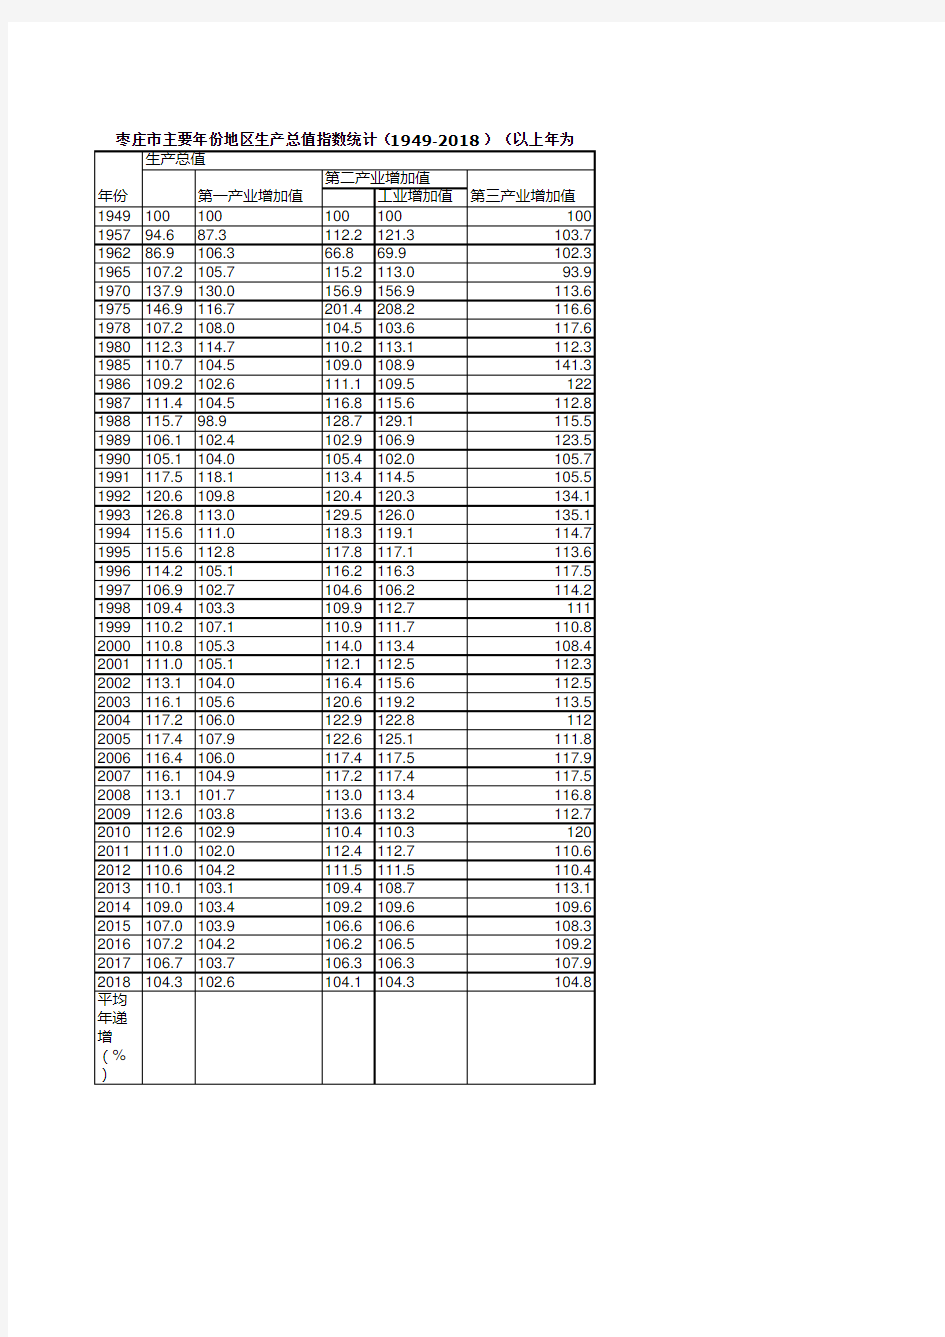 枣庄市统计年鉴社会经济发展指标数据：主要年份地区生产总值指数统计(1949-2018)(以上年为100)